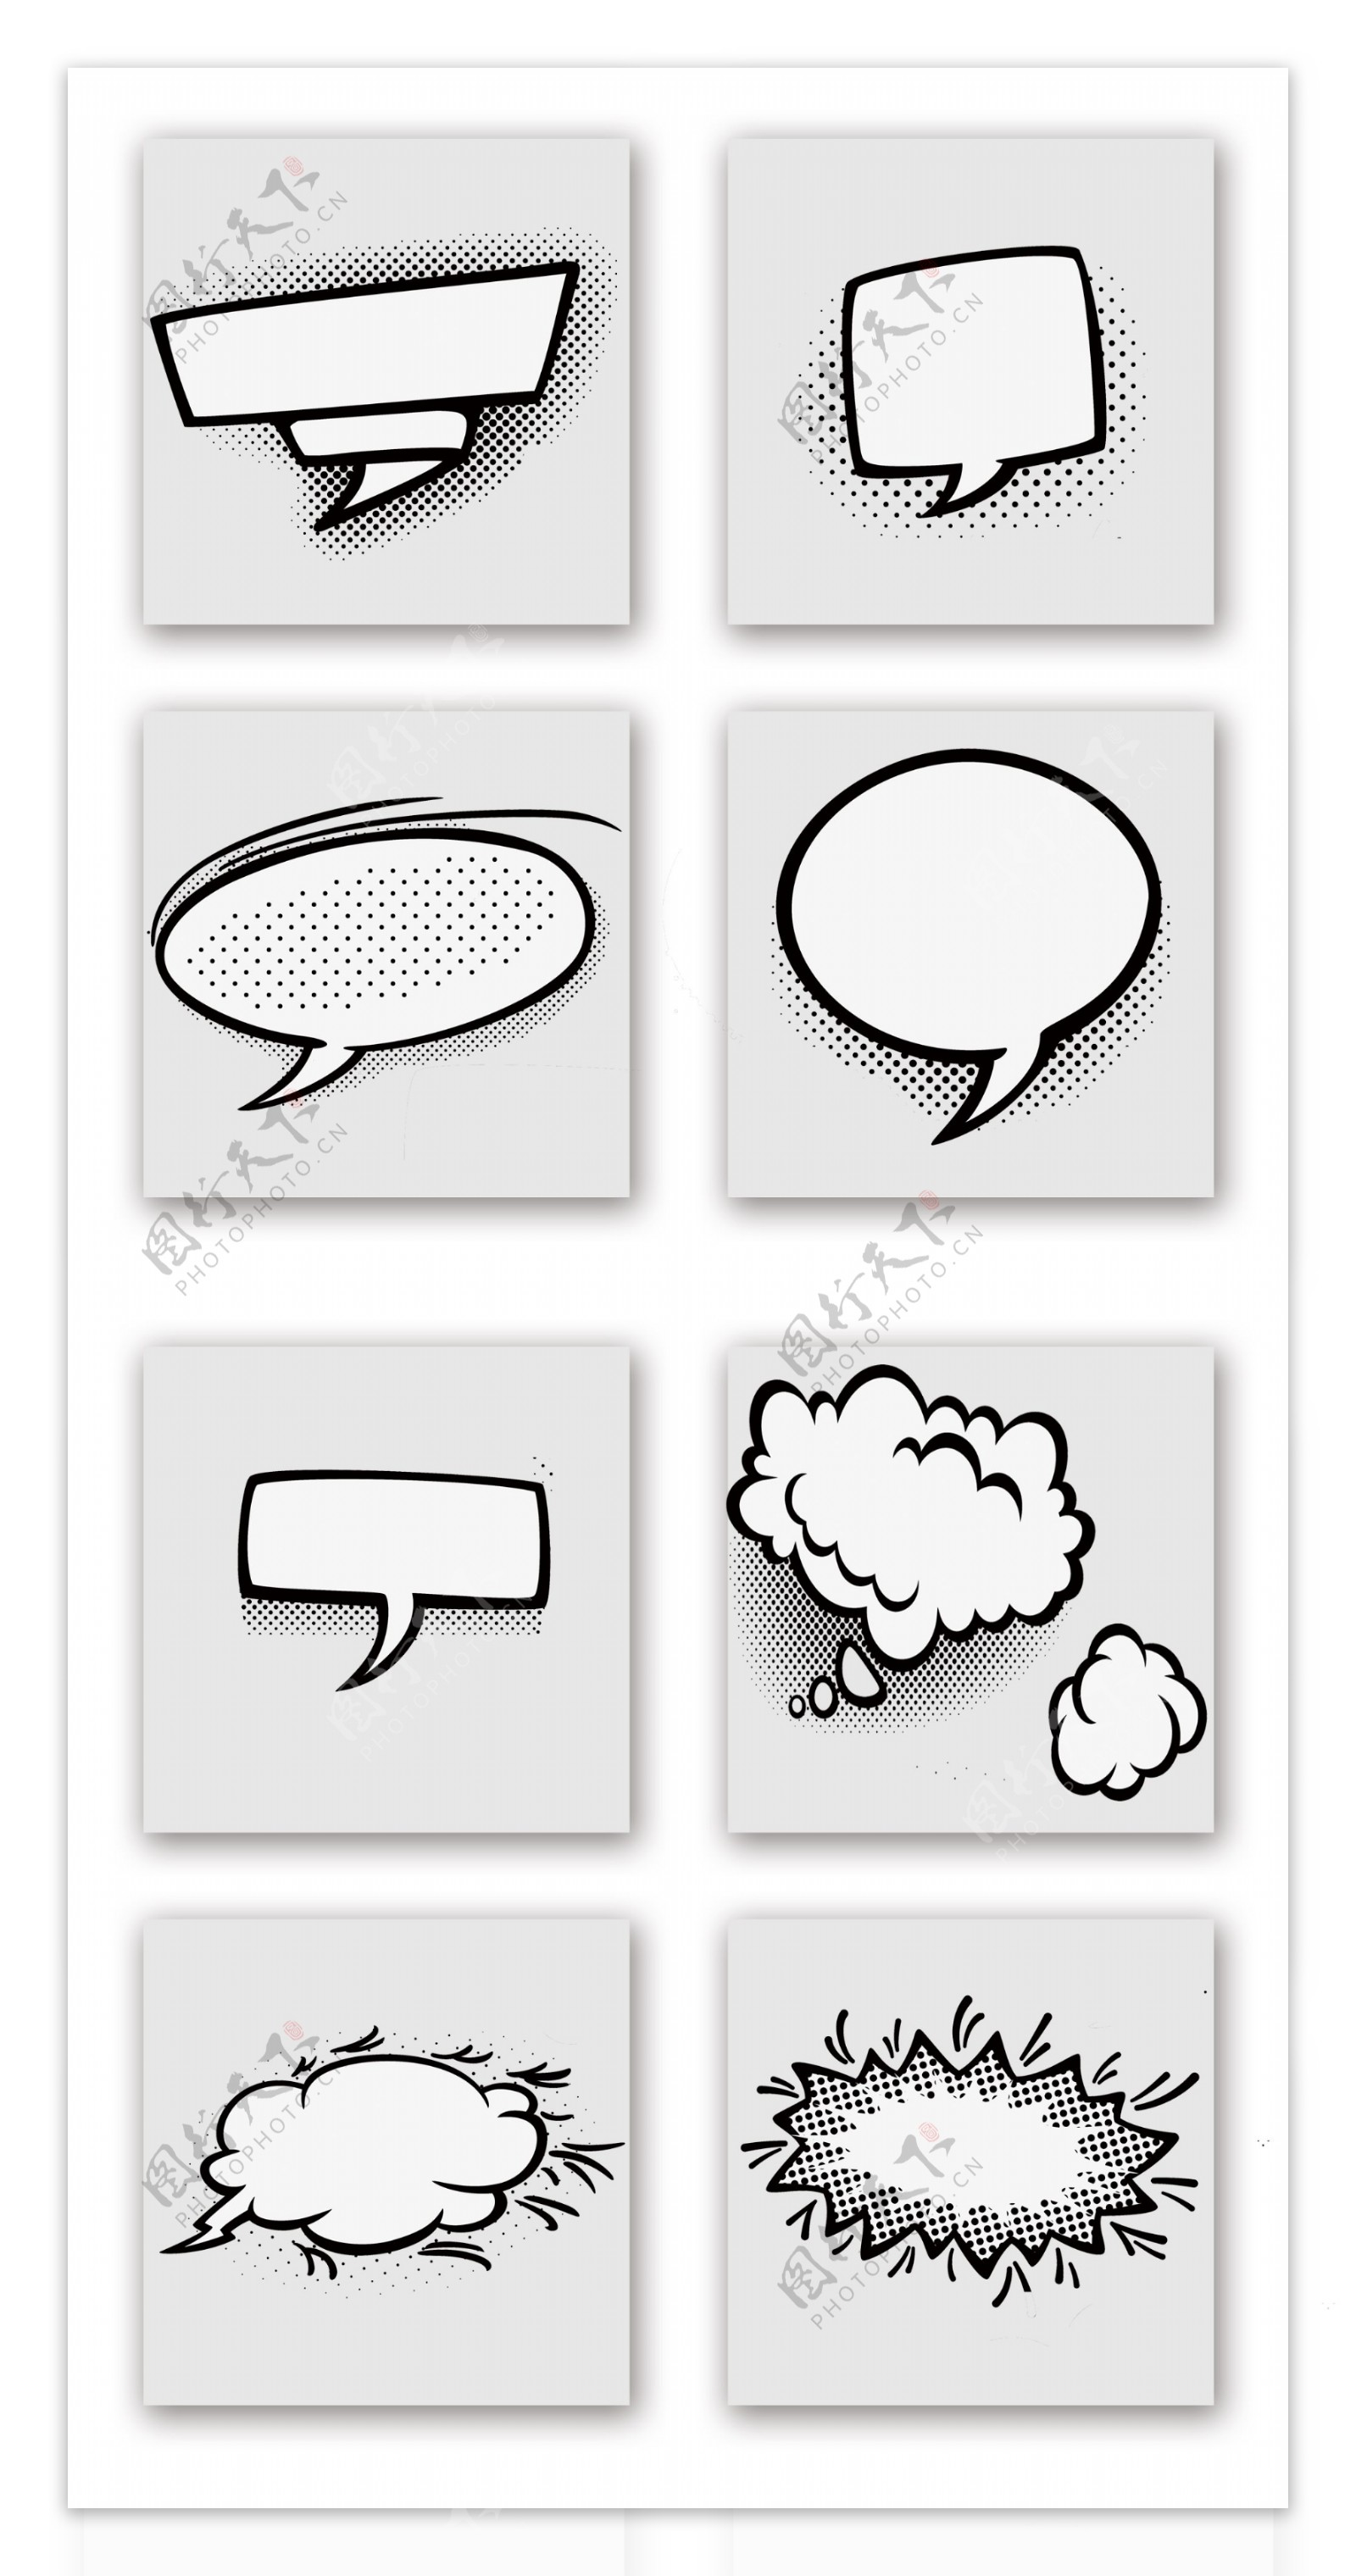 一组黑白漫画简约风格的对话框